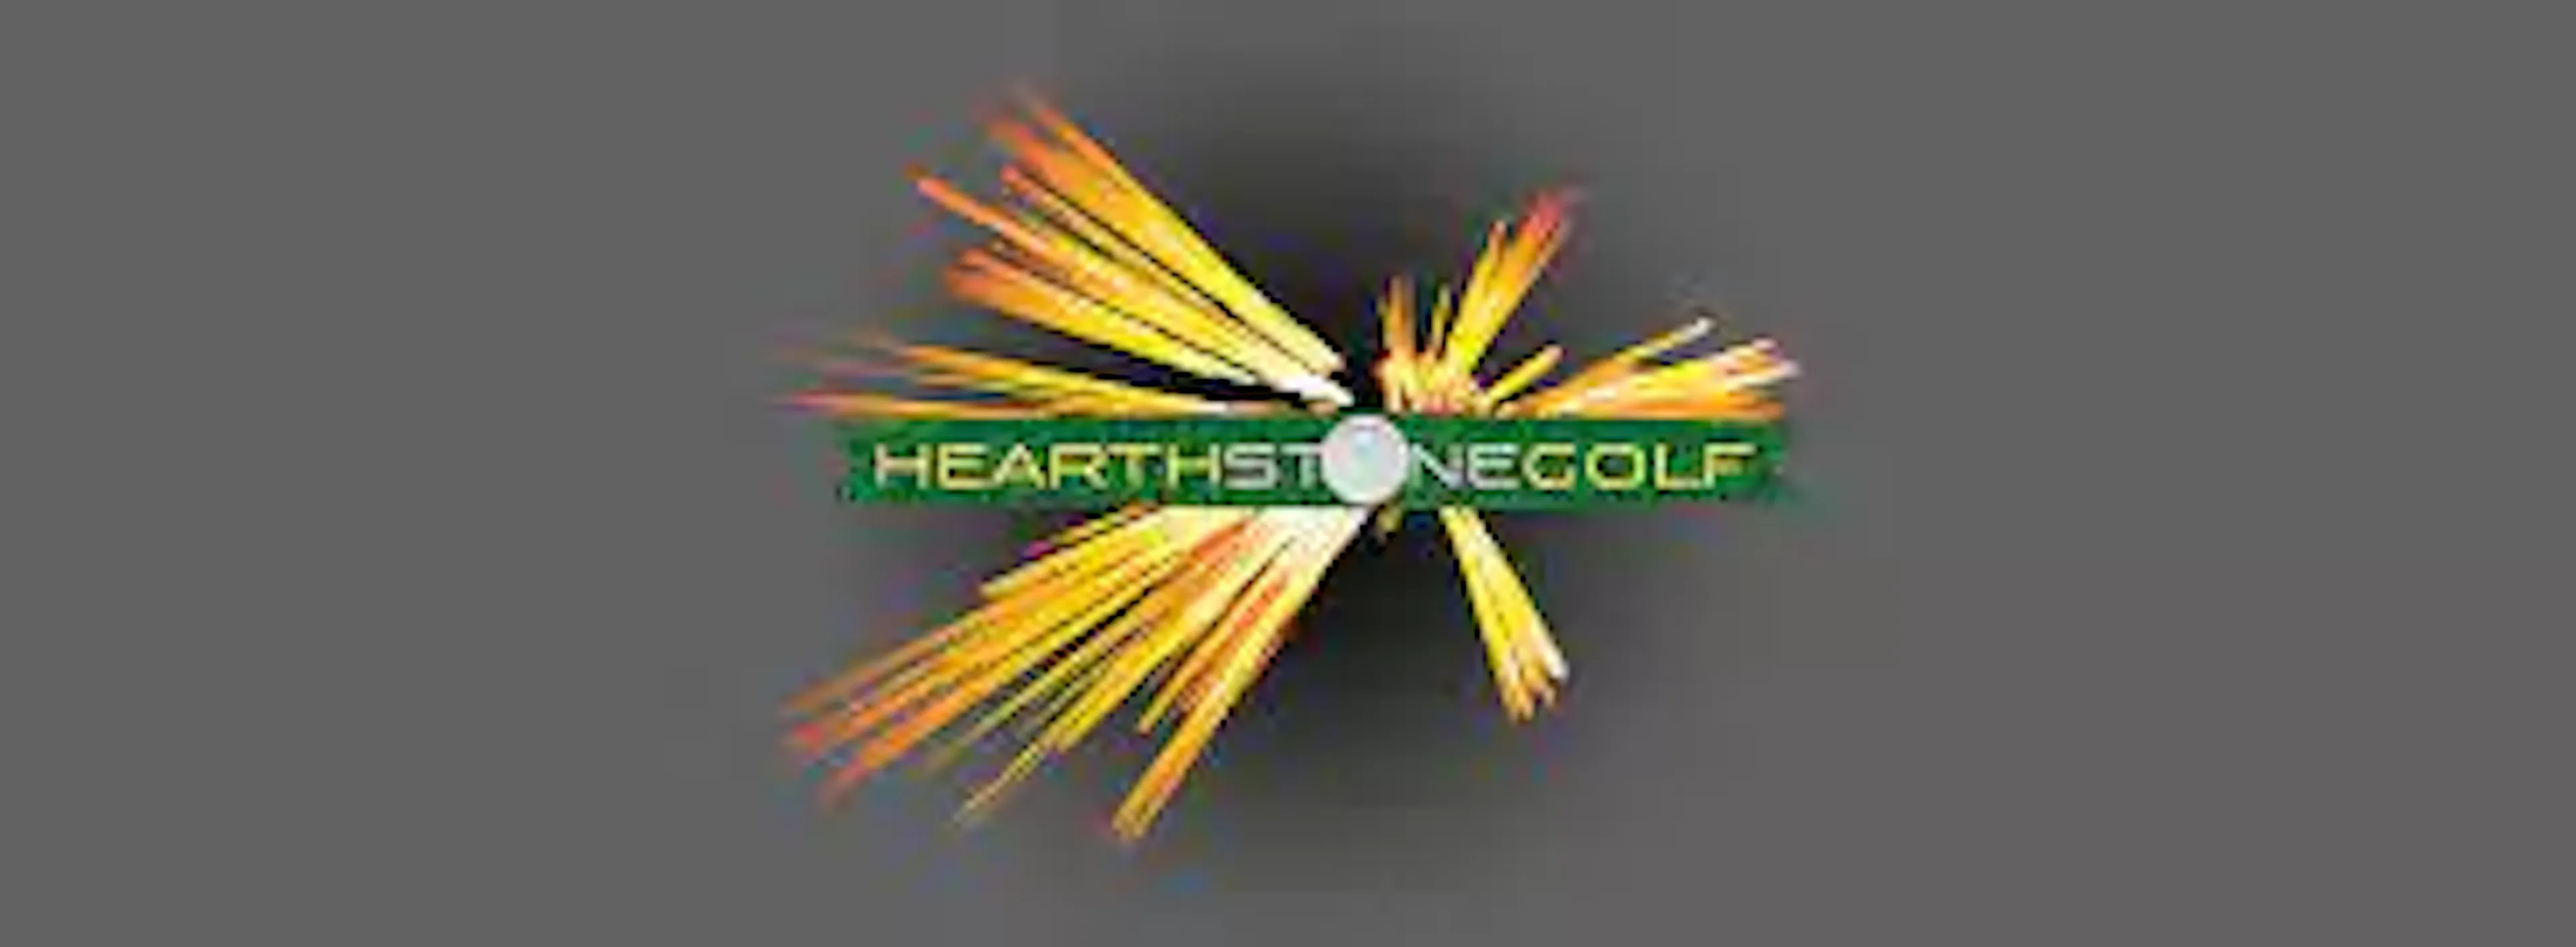 hearthstone golf